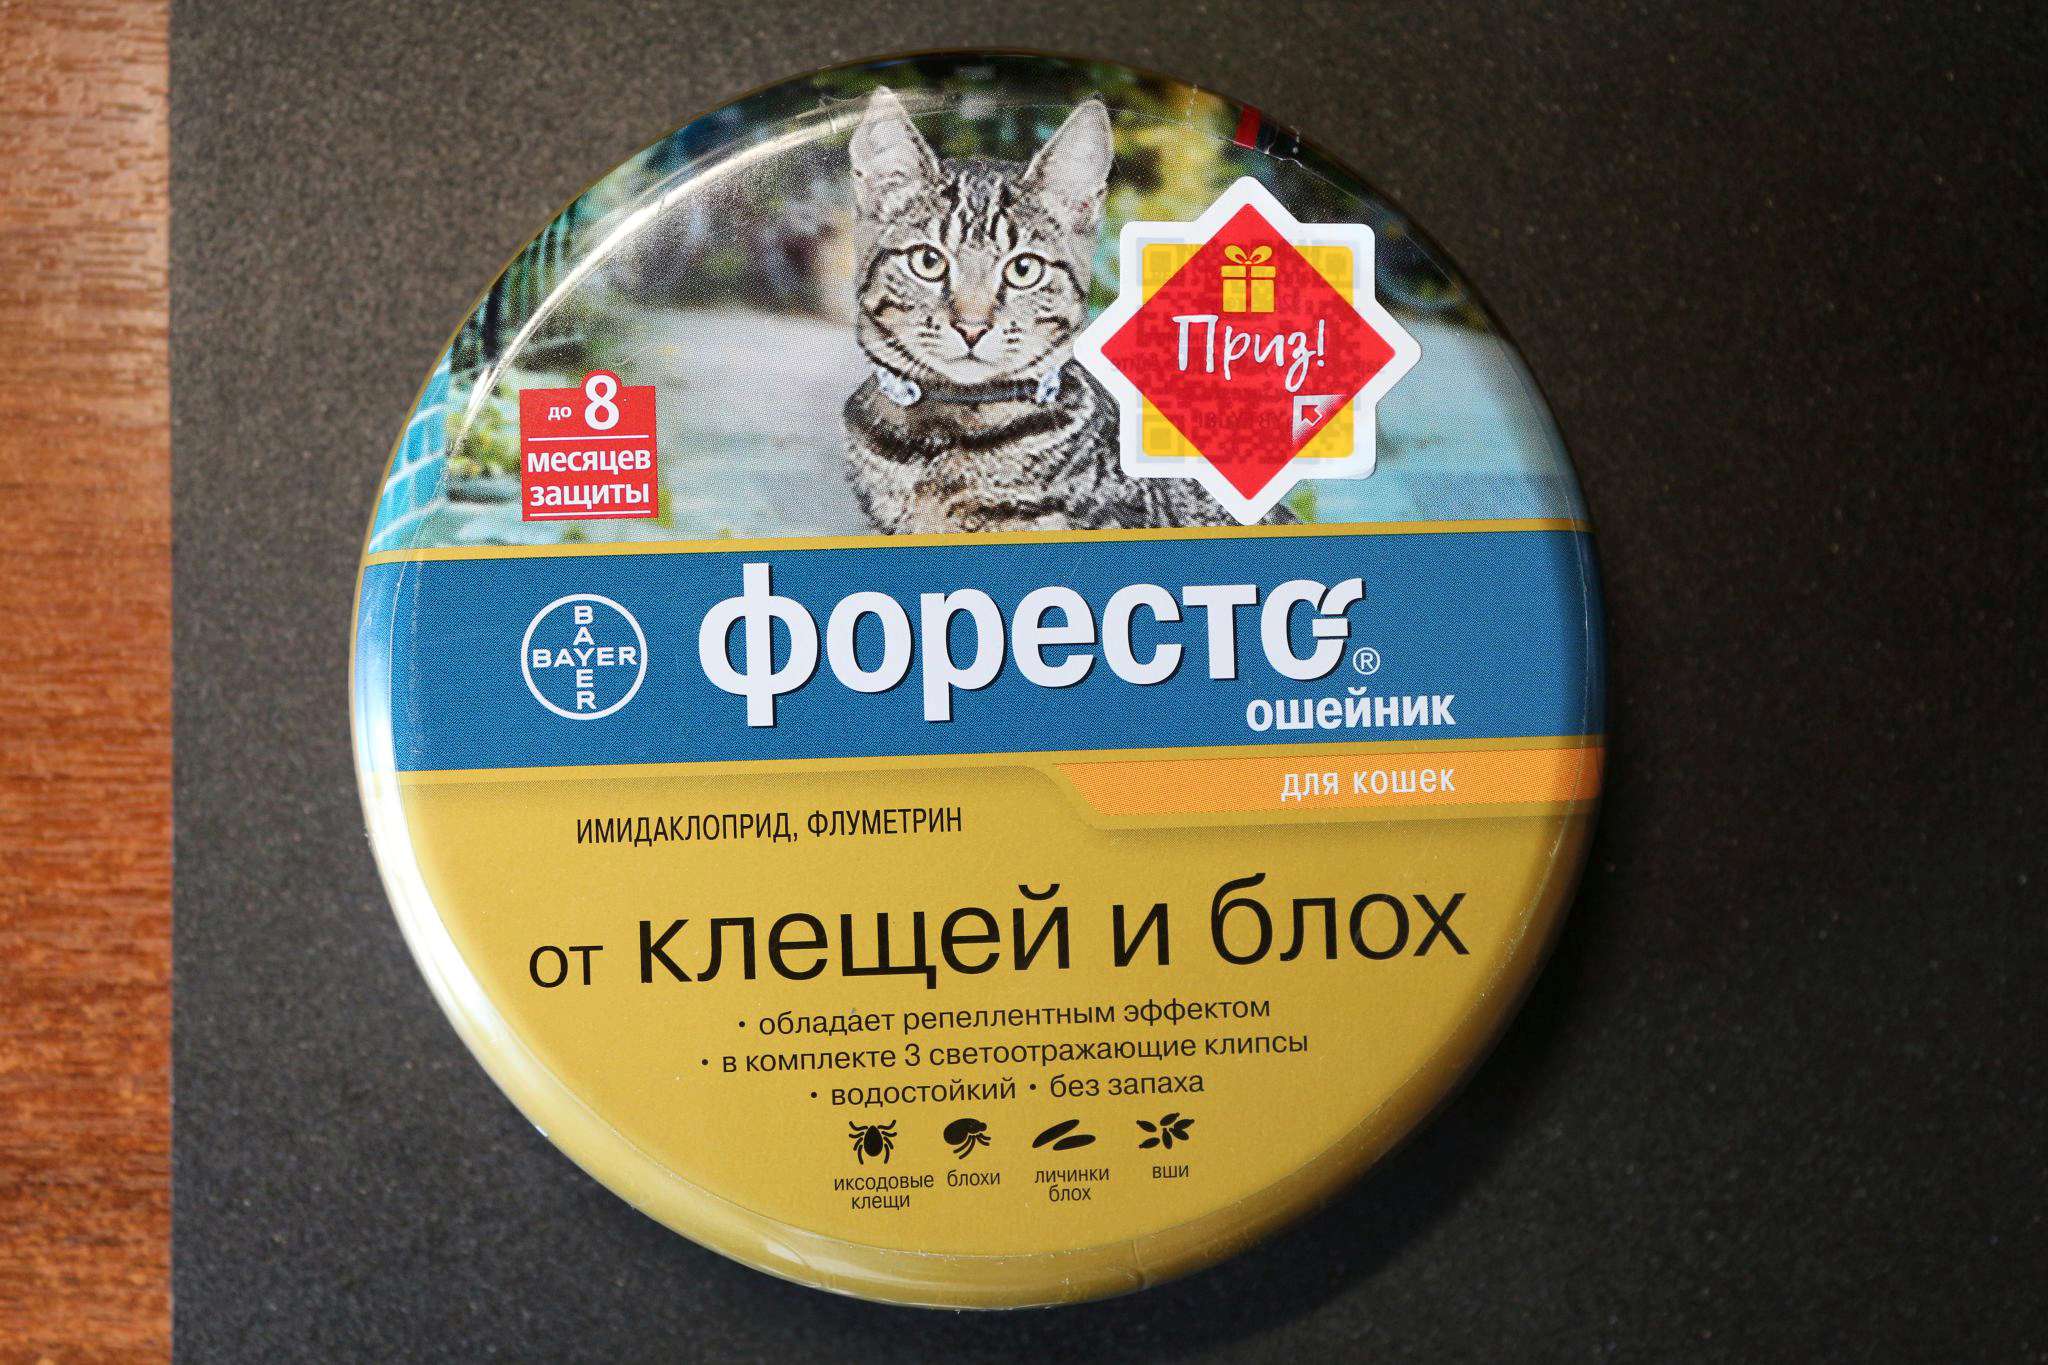 Форесто ошейник для кошек купить в москве